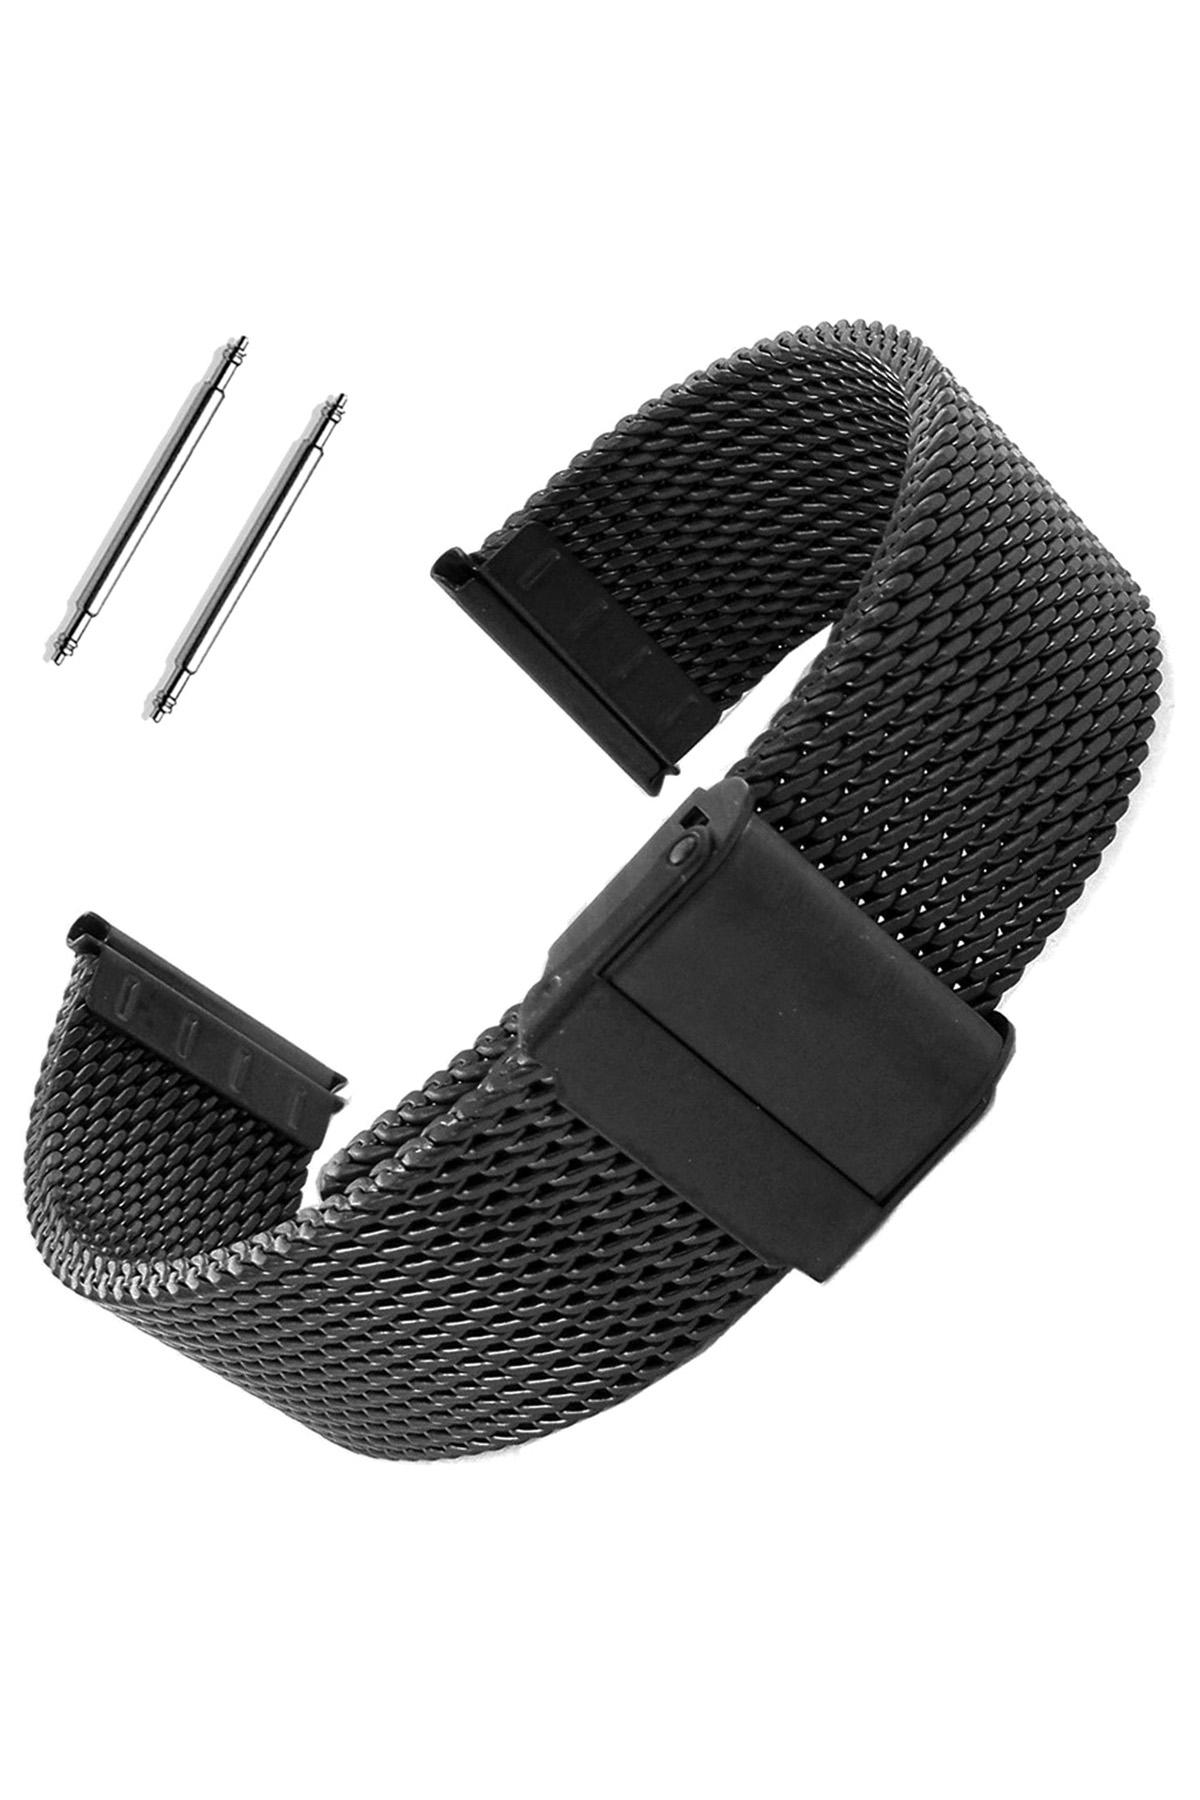 Изображение товара: Ремешок из нержавеющей стали для часов, толстый черный браслет с металлической сеткой, 18 мм